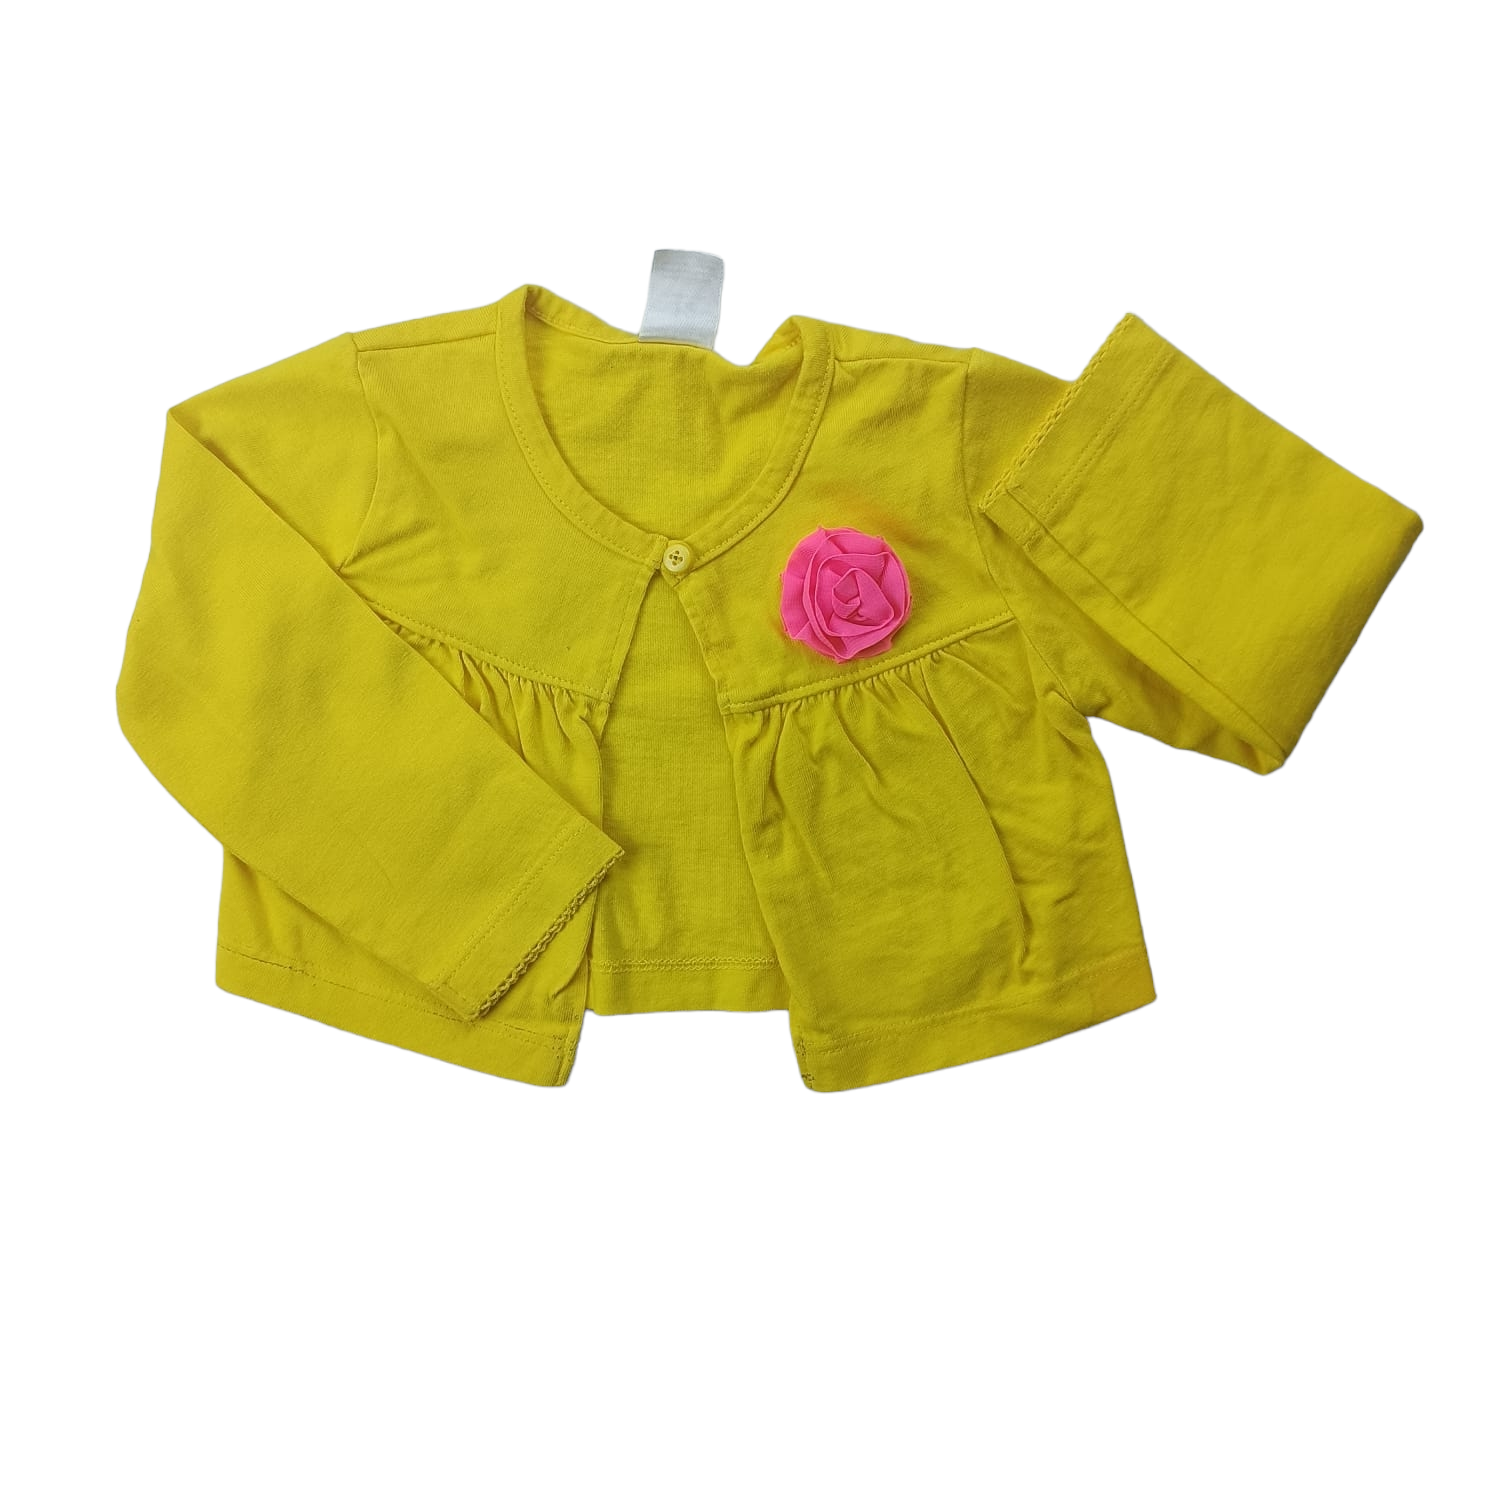 Chaleco Carter's amarillo con flor rosada